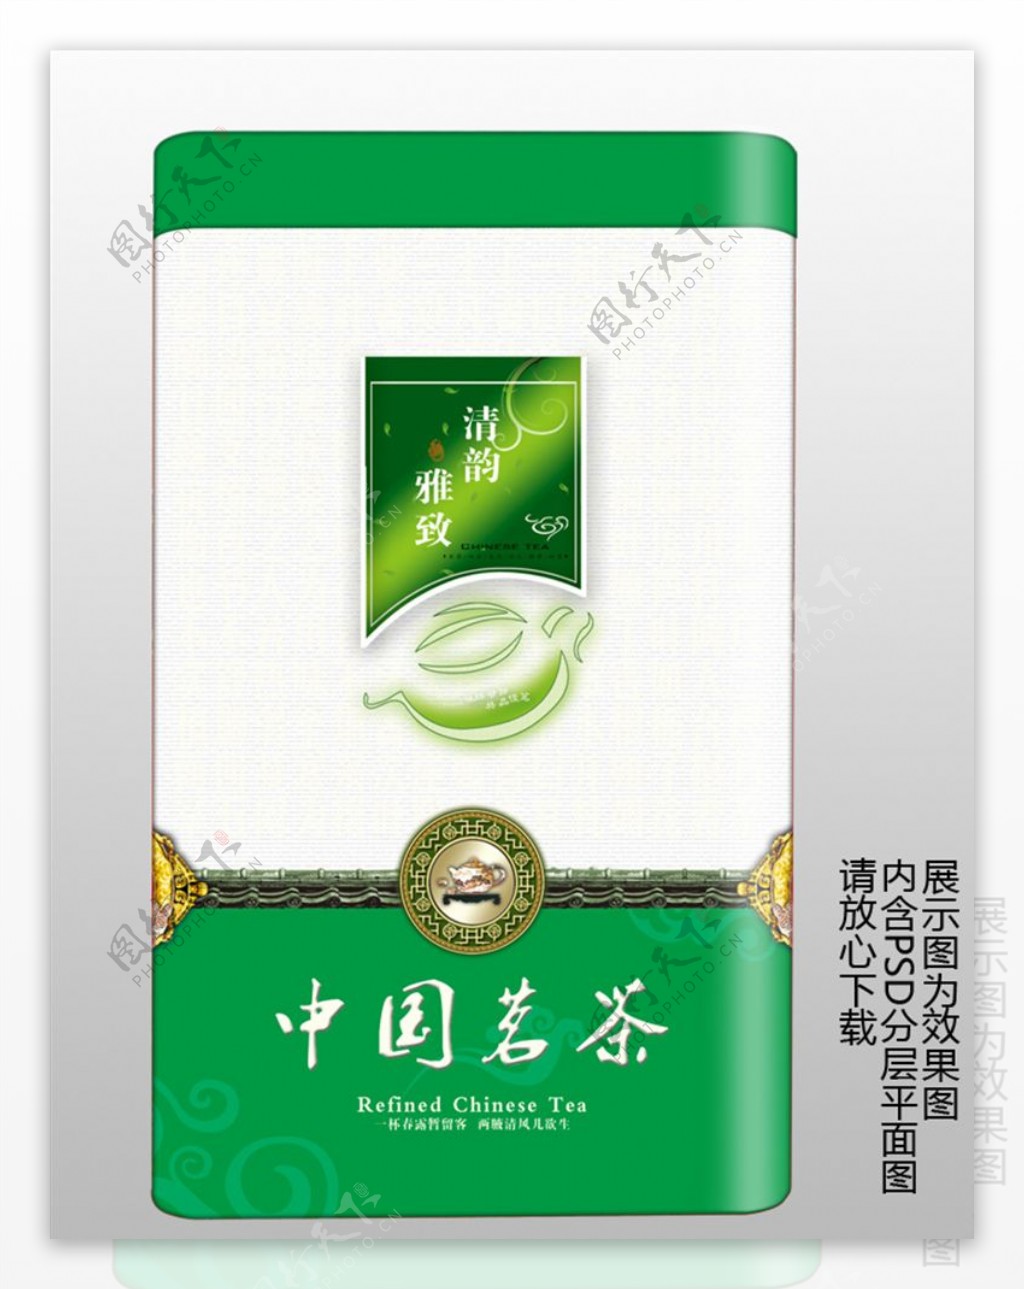 中国茗茶铁罐PSD分层平面图